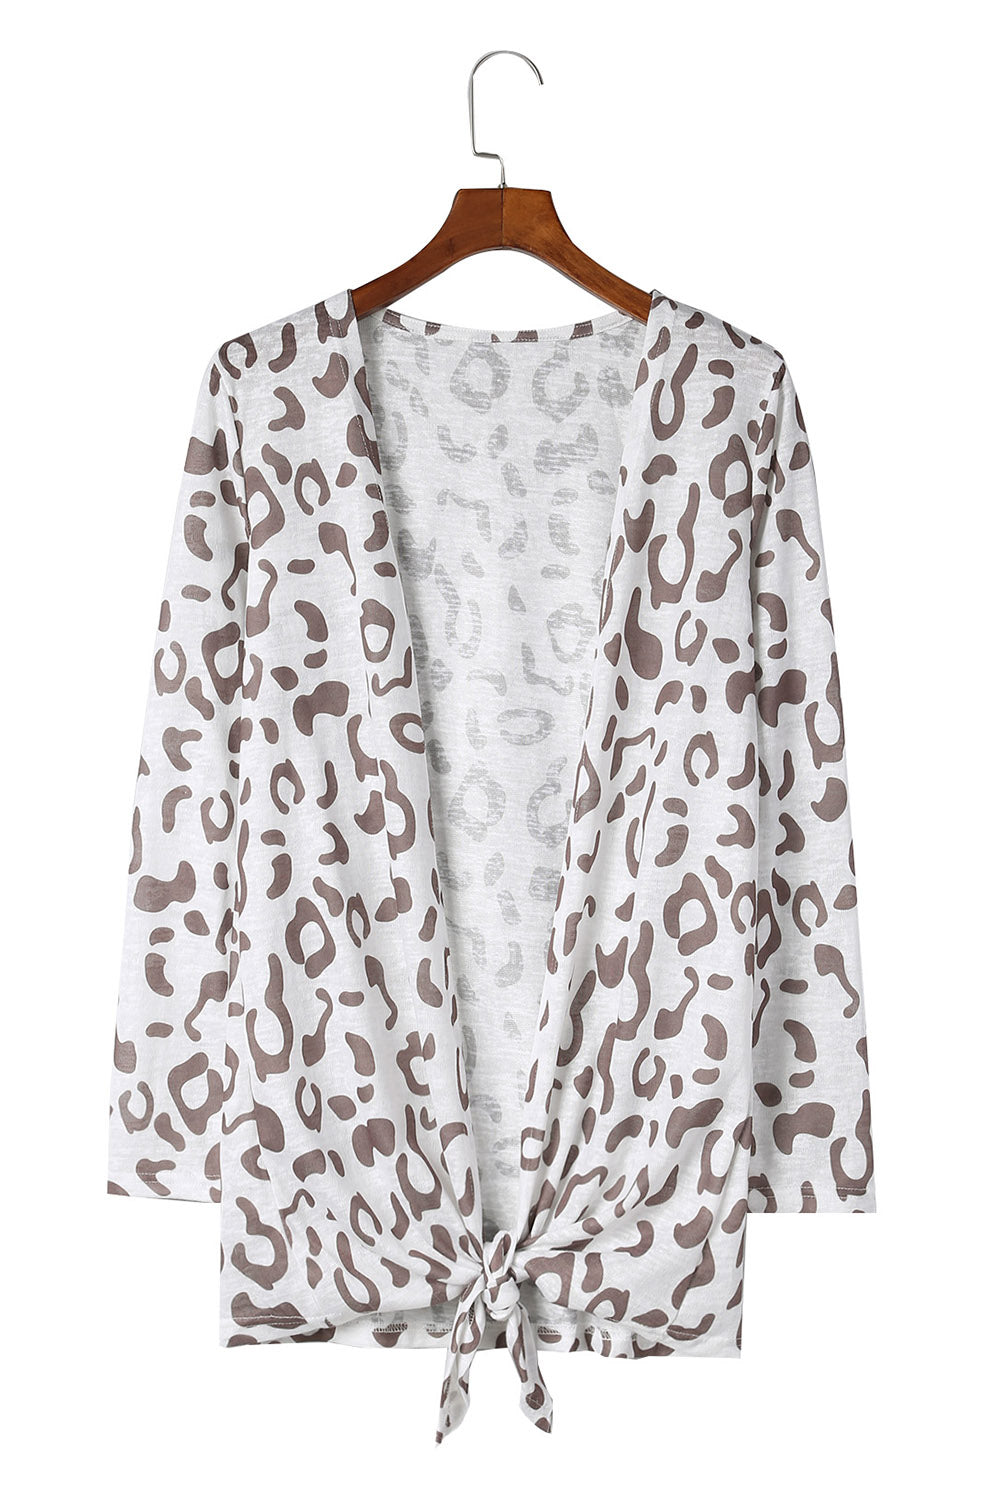 Women's Full Size Leopard Long-Sleeve Open Front Cardigan